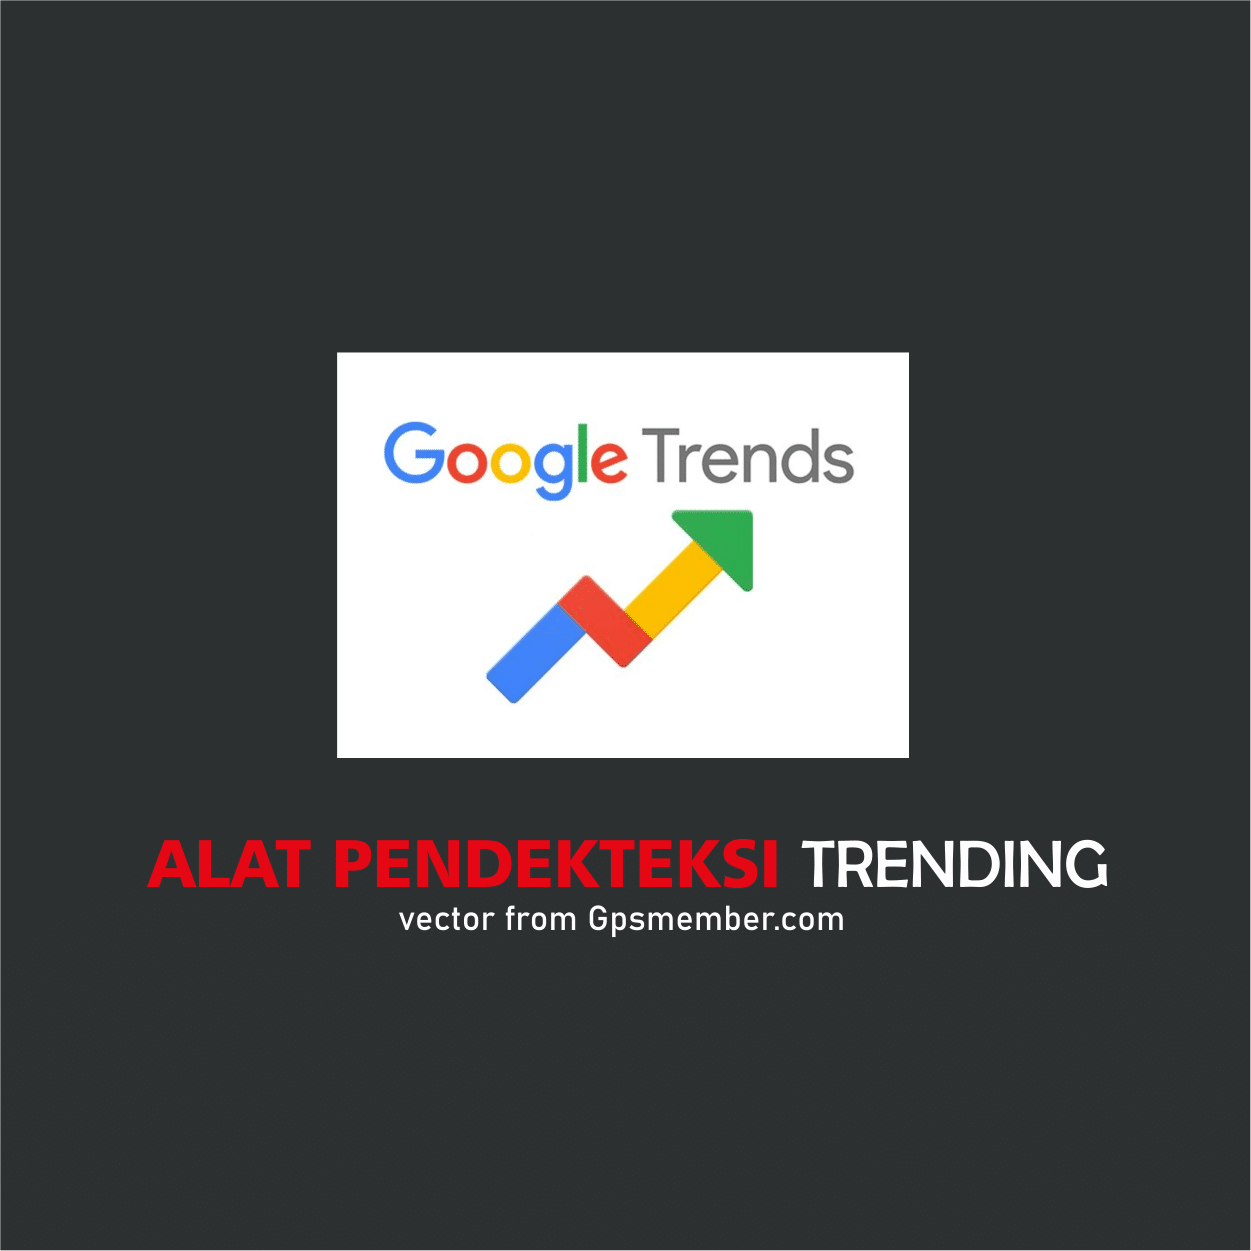 pendeteksi trending google trends